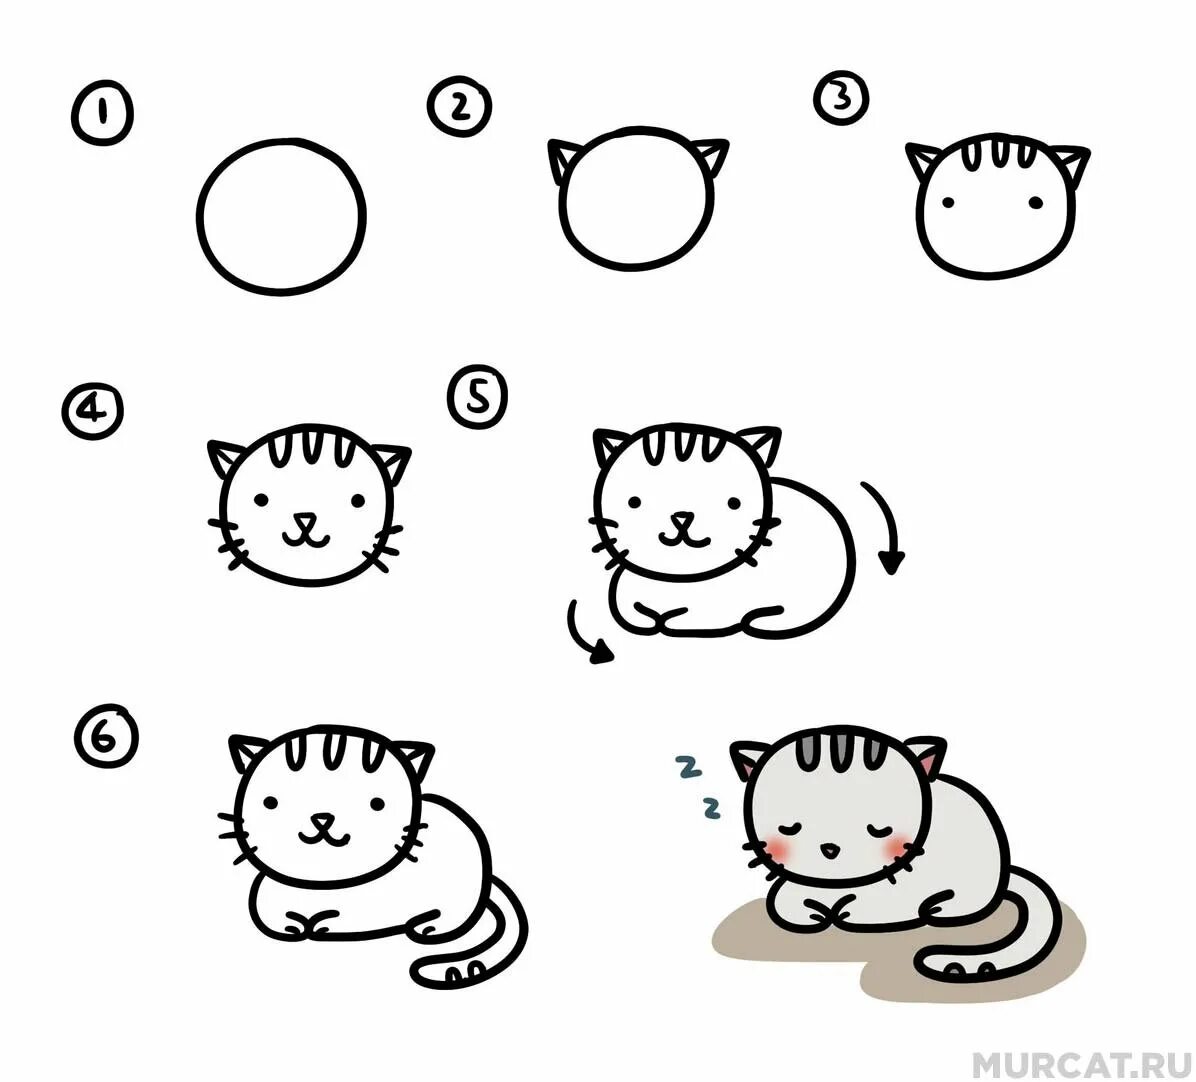 Как нарисовать кота поэтапно для детей. Схема рисования котенка для детей. Схема рисования кошки для дошкольников. Поэтапное рисование котика для детей. Простые схемы рисования для малышей.